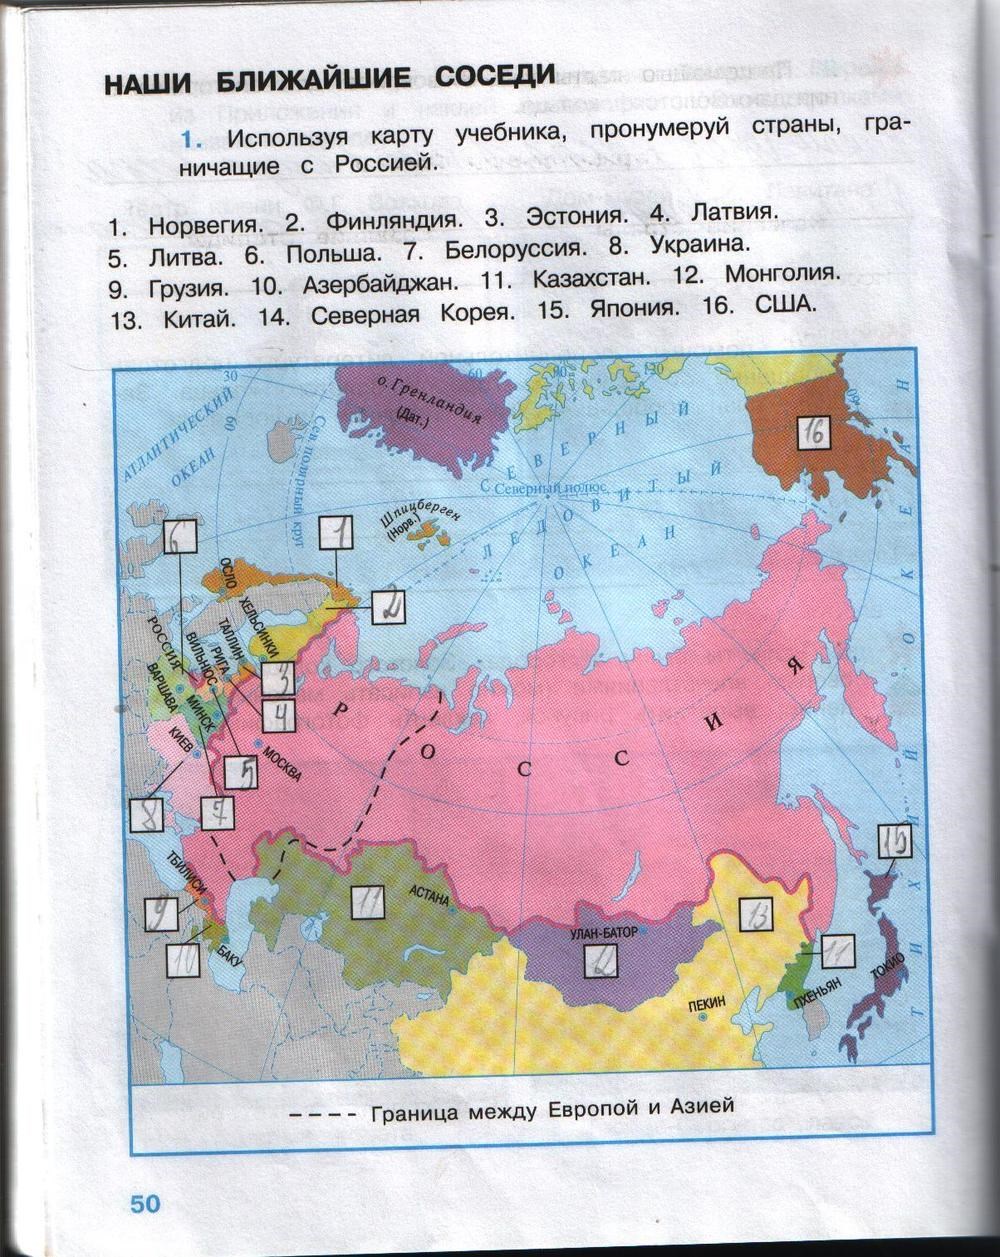 Окружающий мир тема наши соседи. Карта России 3 класс окружающий мир рабочая тетрадь. Карта России окружающий мир 3 класс учебник. Плешаков 3 класс рабочая тетрадь наши ближайшие соседи. Карта по окружающему миру 3 класс.